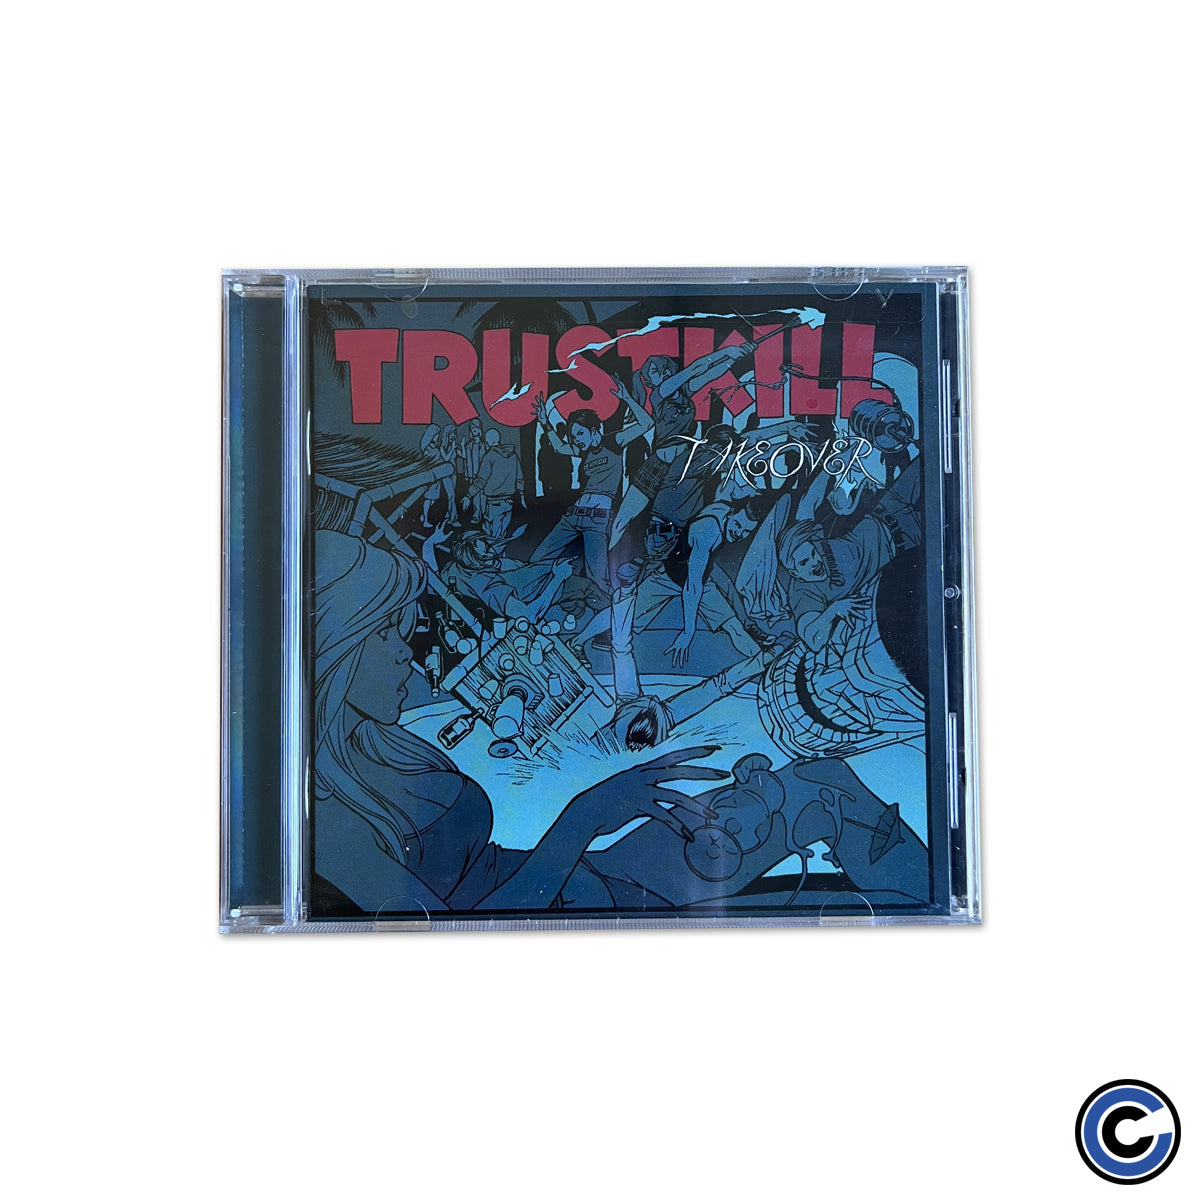 Trustkill Records "Trustkill Takeover" Compilation CD